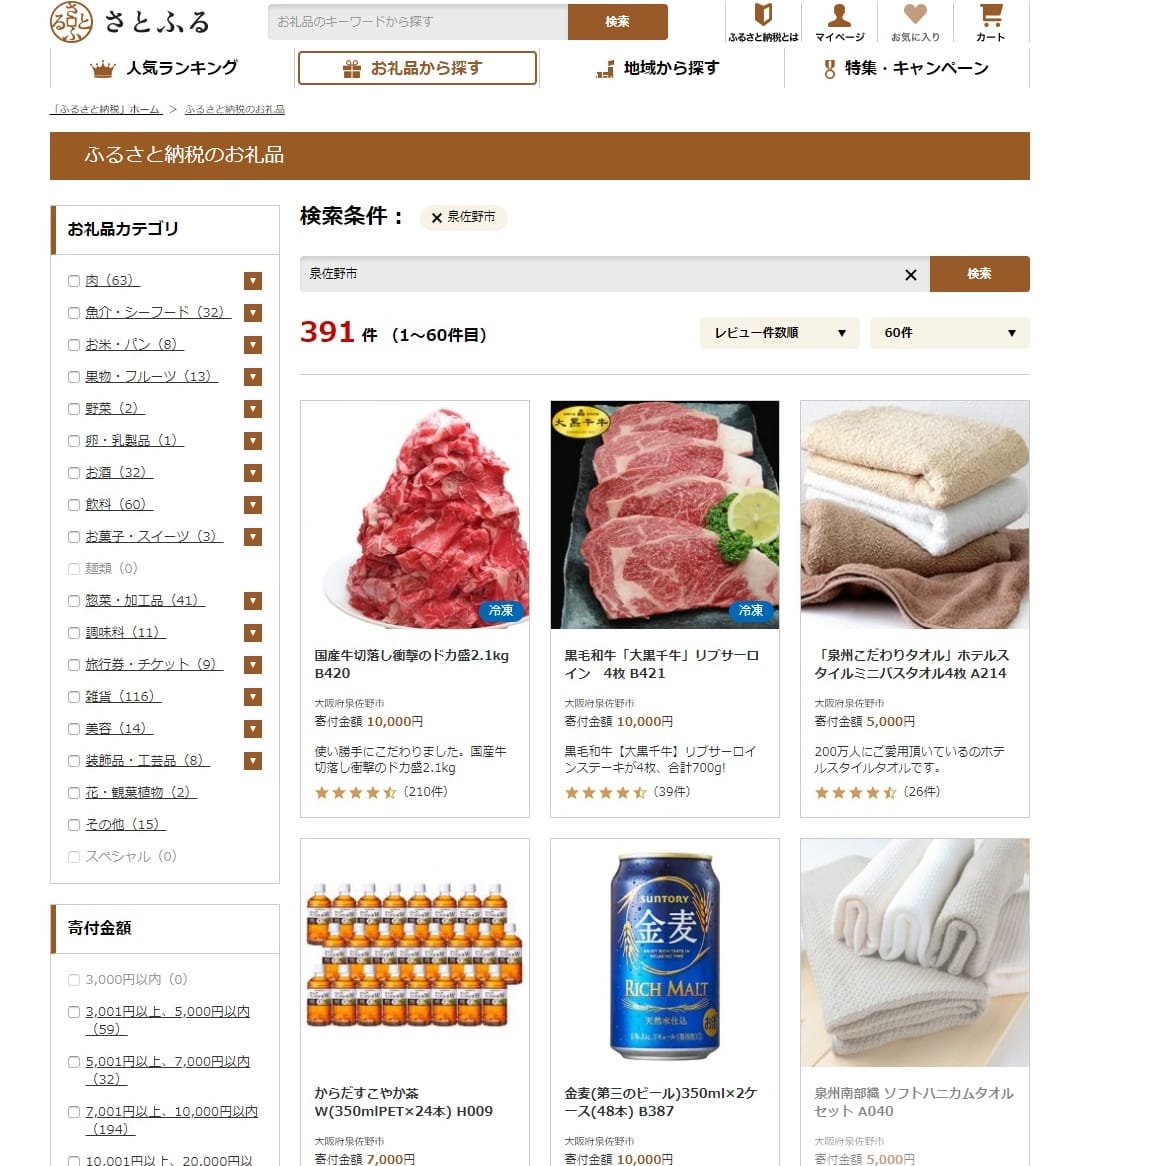 ふるさと納税サイト「さとふる」泉佐野市で検索